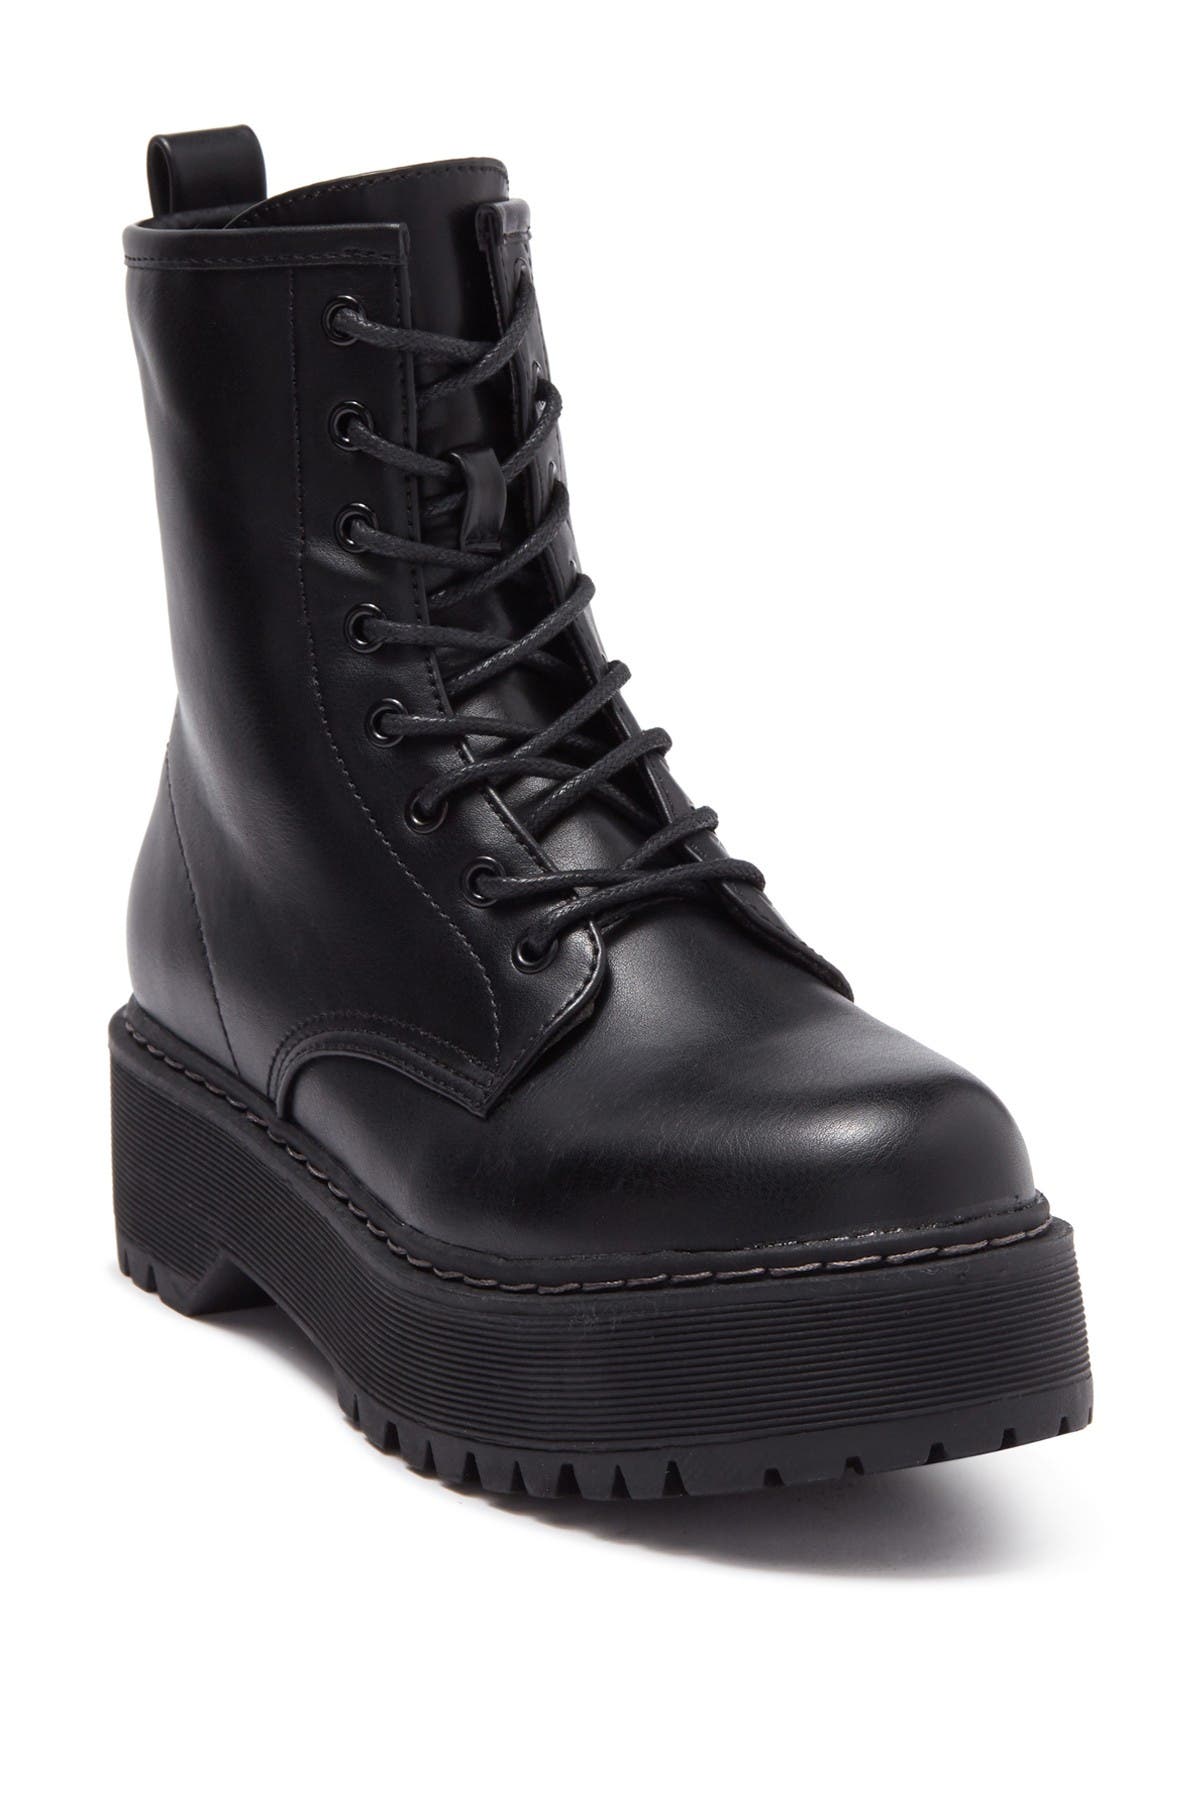 steve madden black platform boots